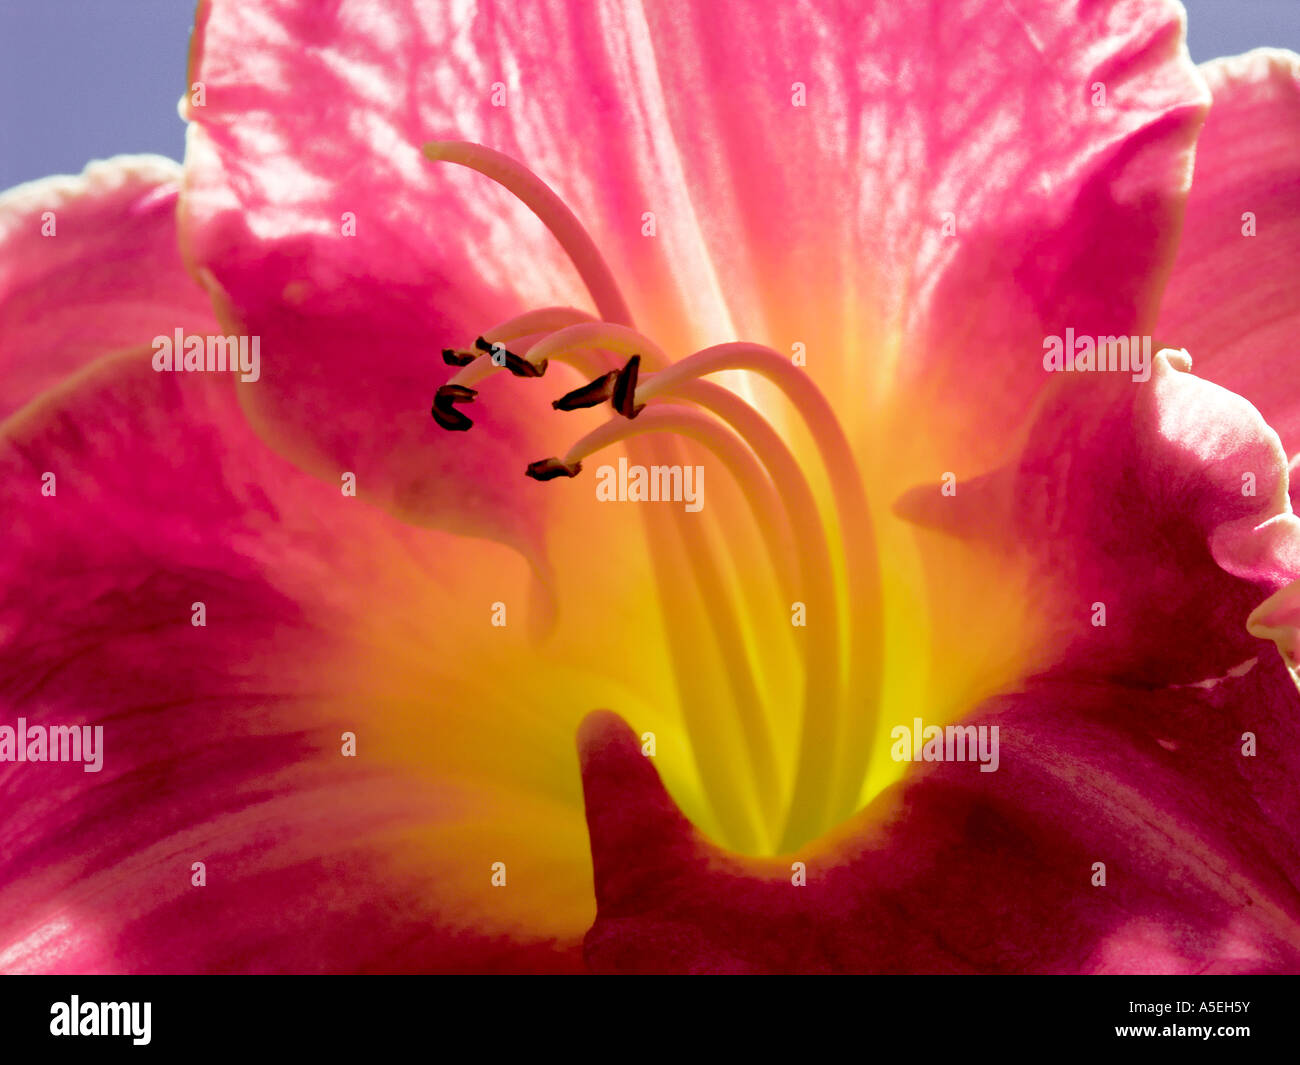 Detailansicht der rot / lila Blume von Hemerocallis - Taglilien Stockfoto